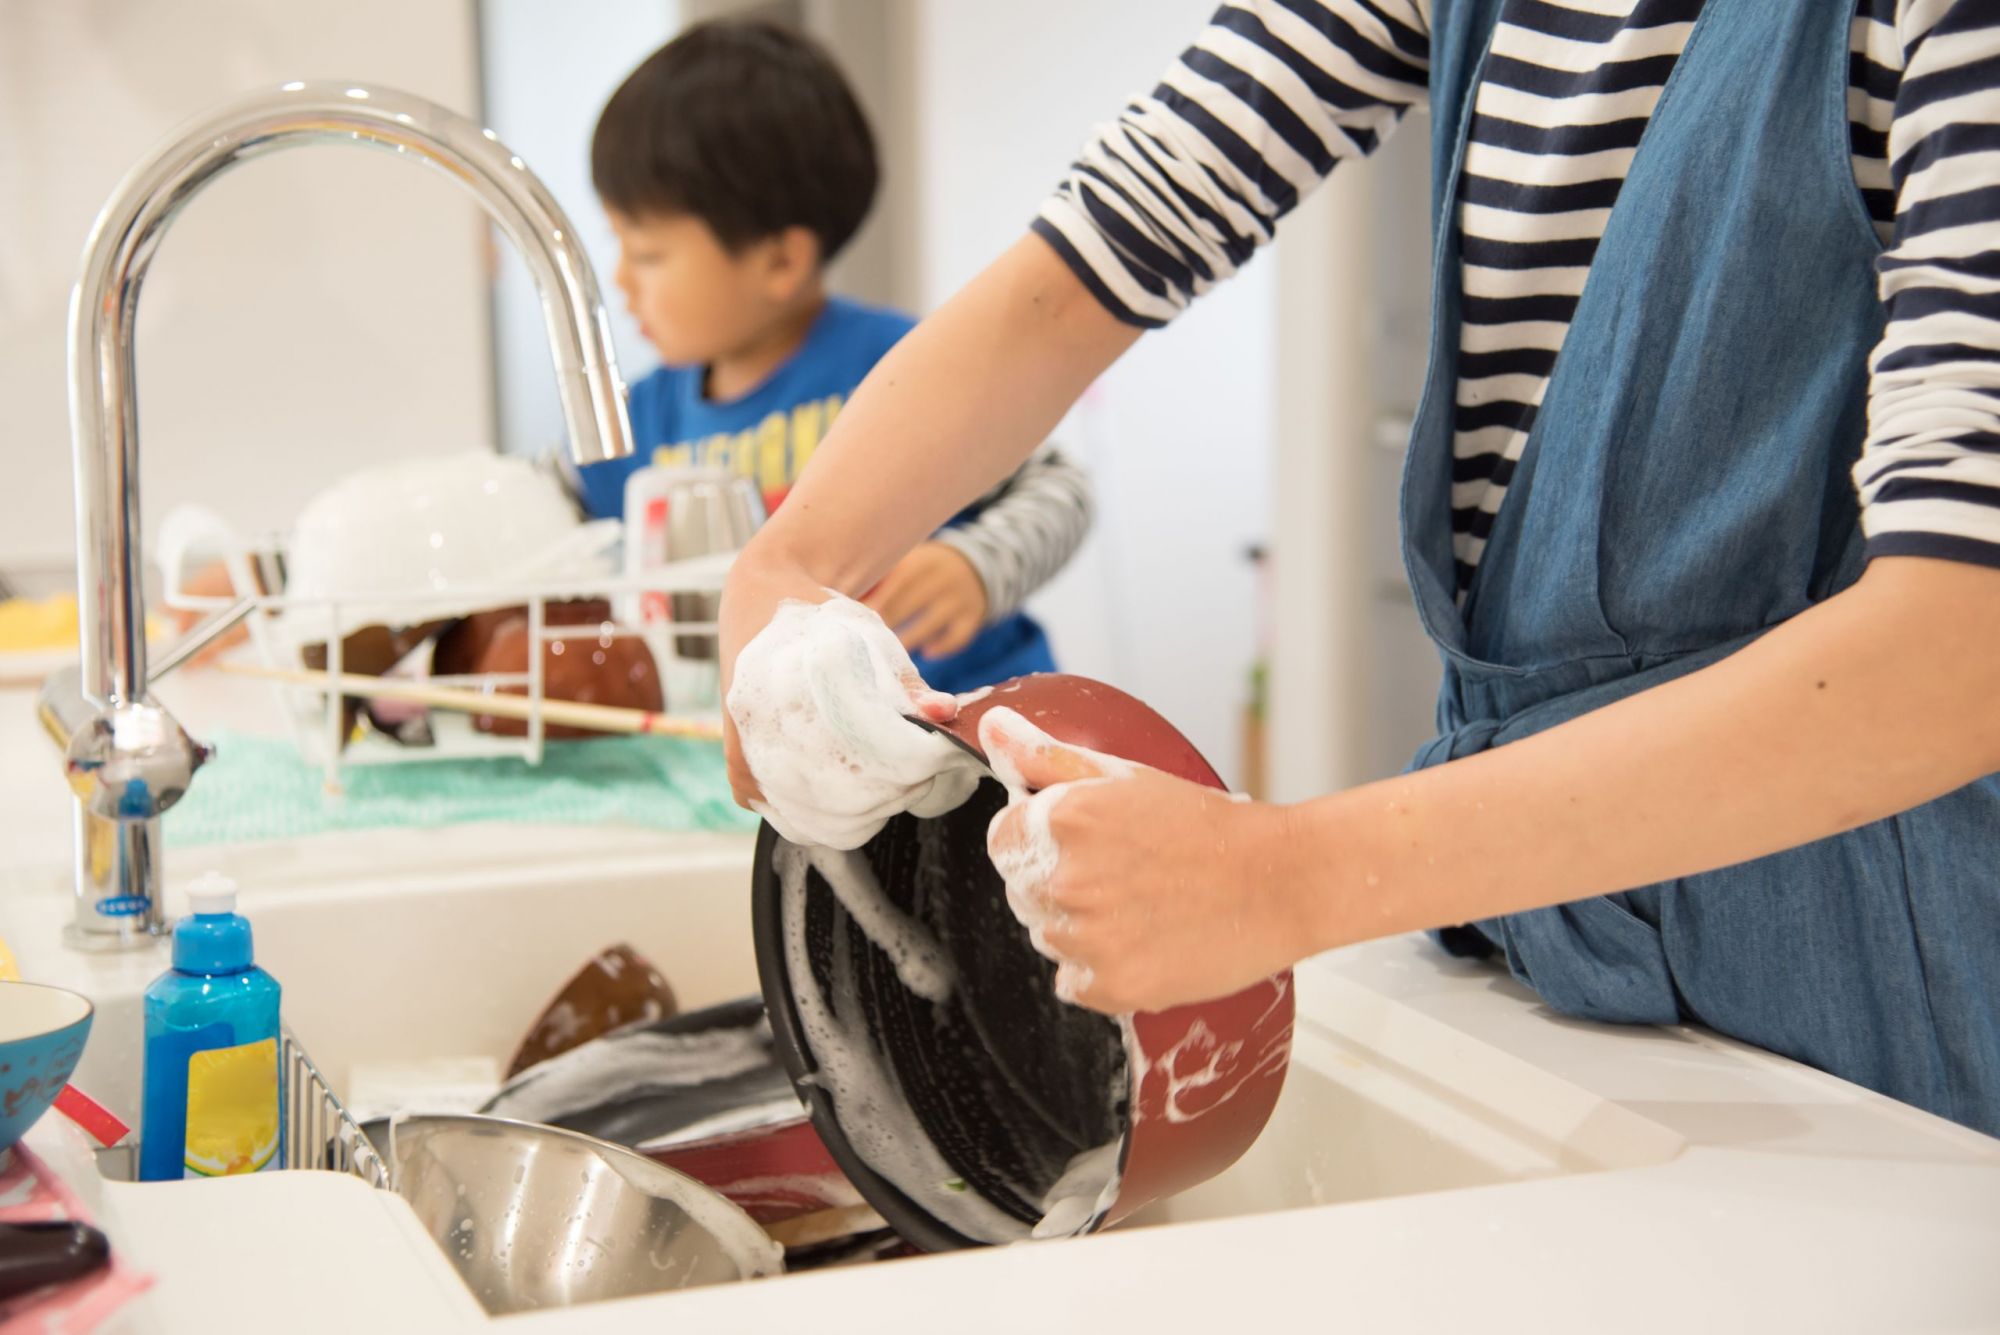 Nghiên cứu của ĐH Harvard: Trẻ làm việc nhà ảnh hưởng đến tất cả mọi khía cạnh của cuộc sống và học tập sau này - Ảnh 2.